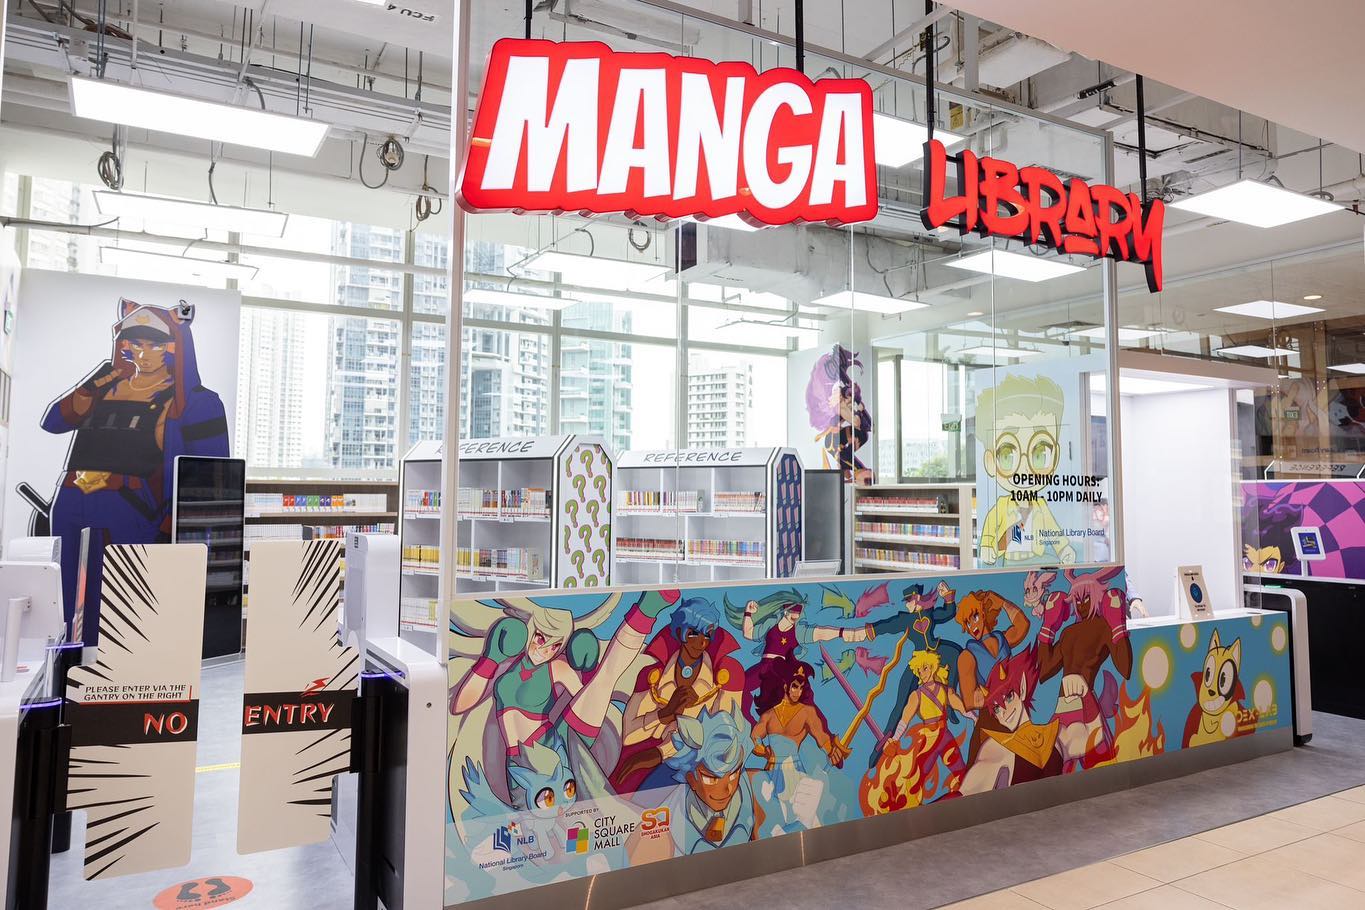 NLB Manga Library - Entrance